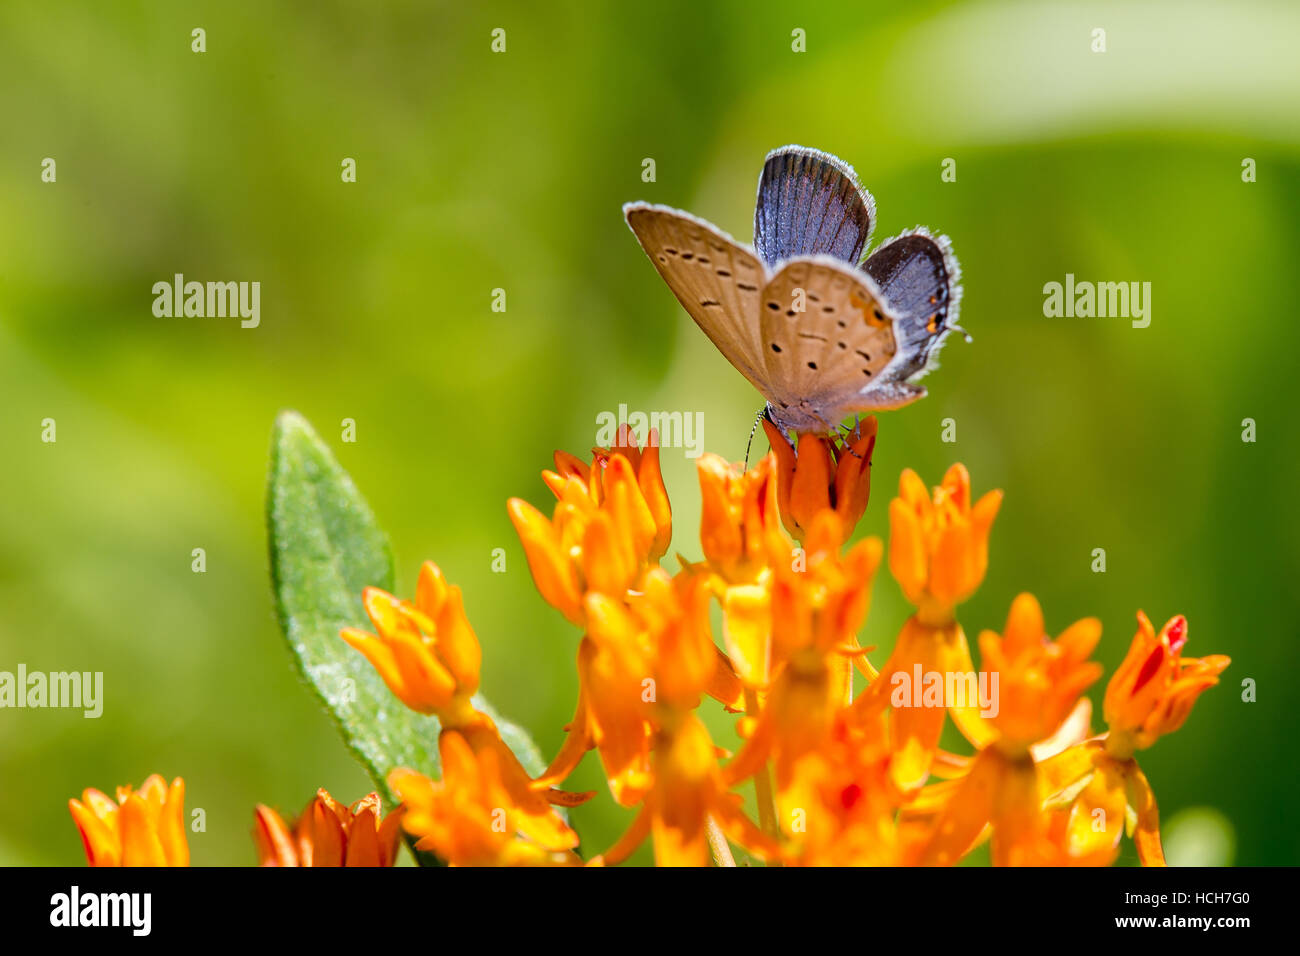 Vista lateral de la cola drunking Oriental mariposa azul de una mariposa flor de malezas Foto de stock